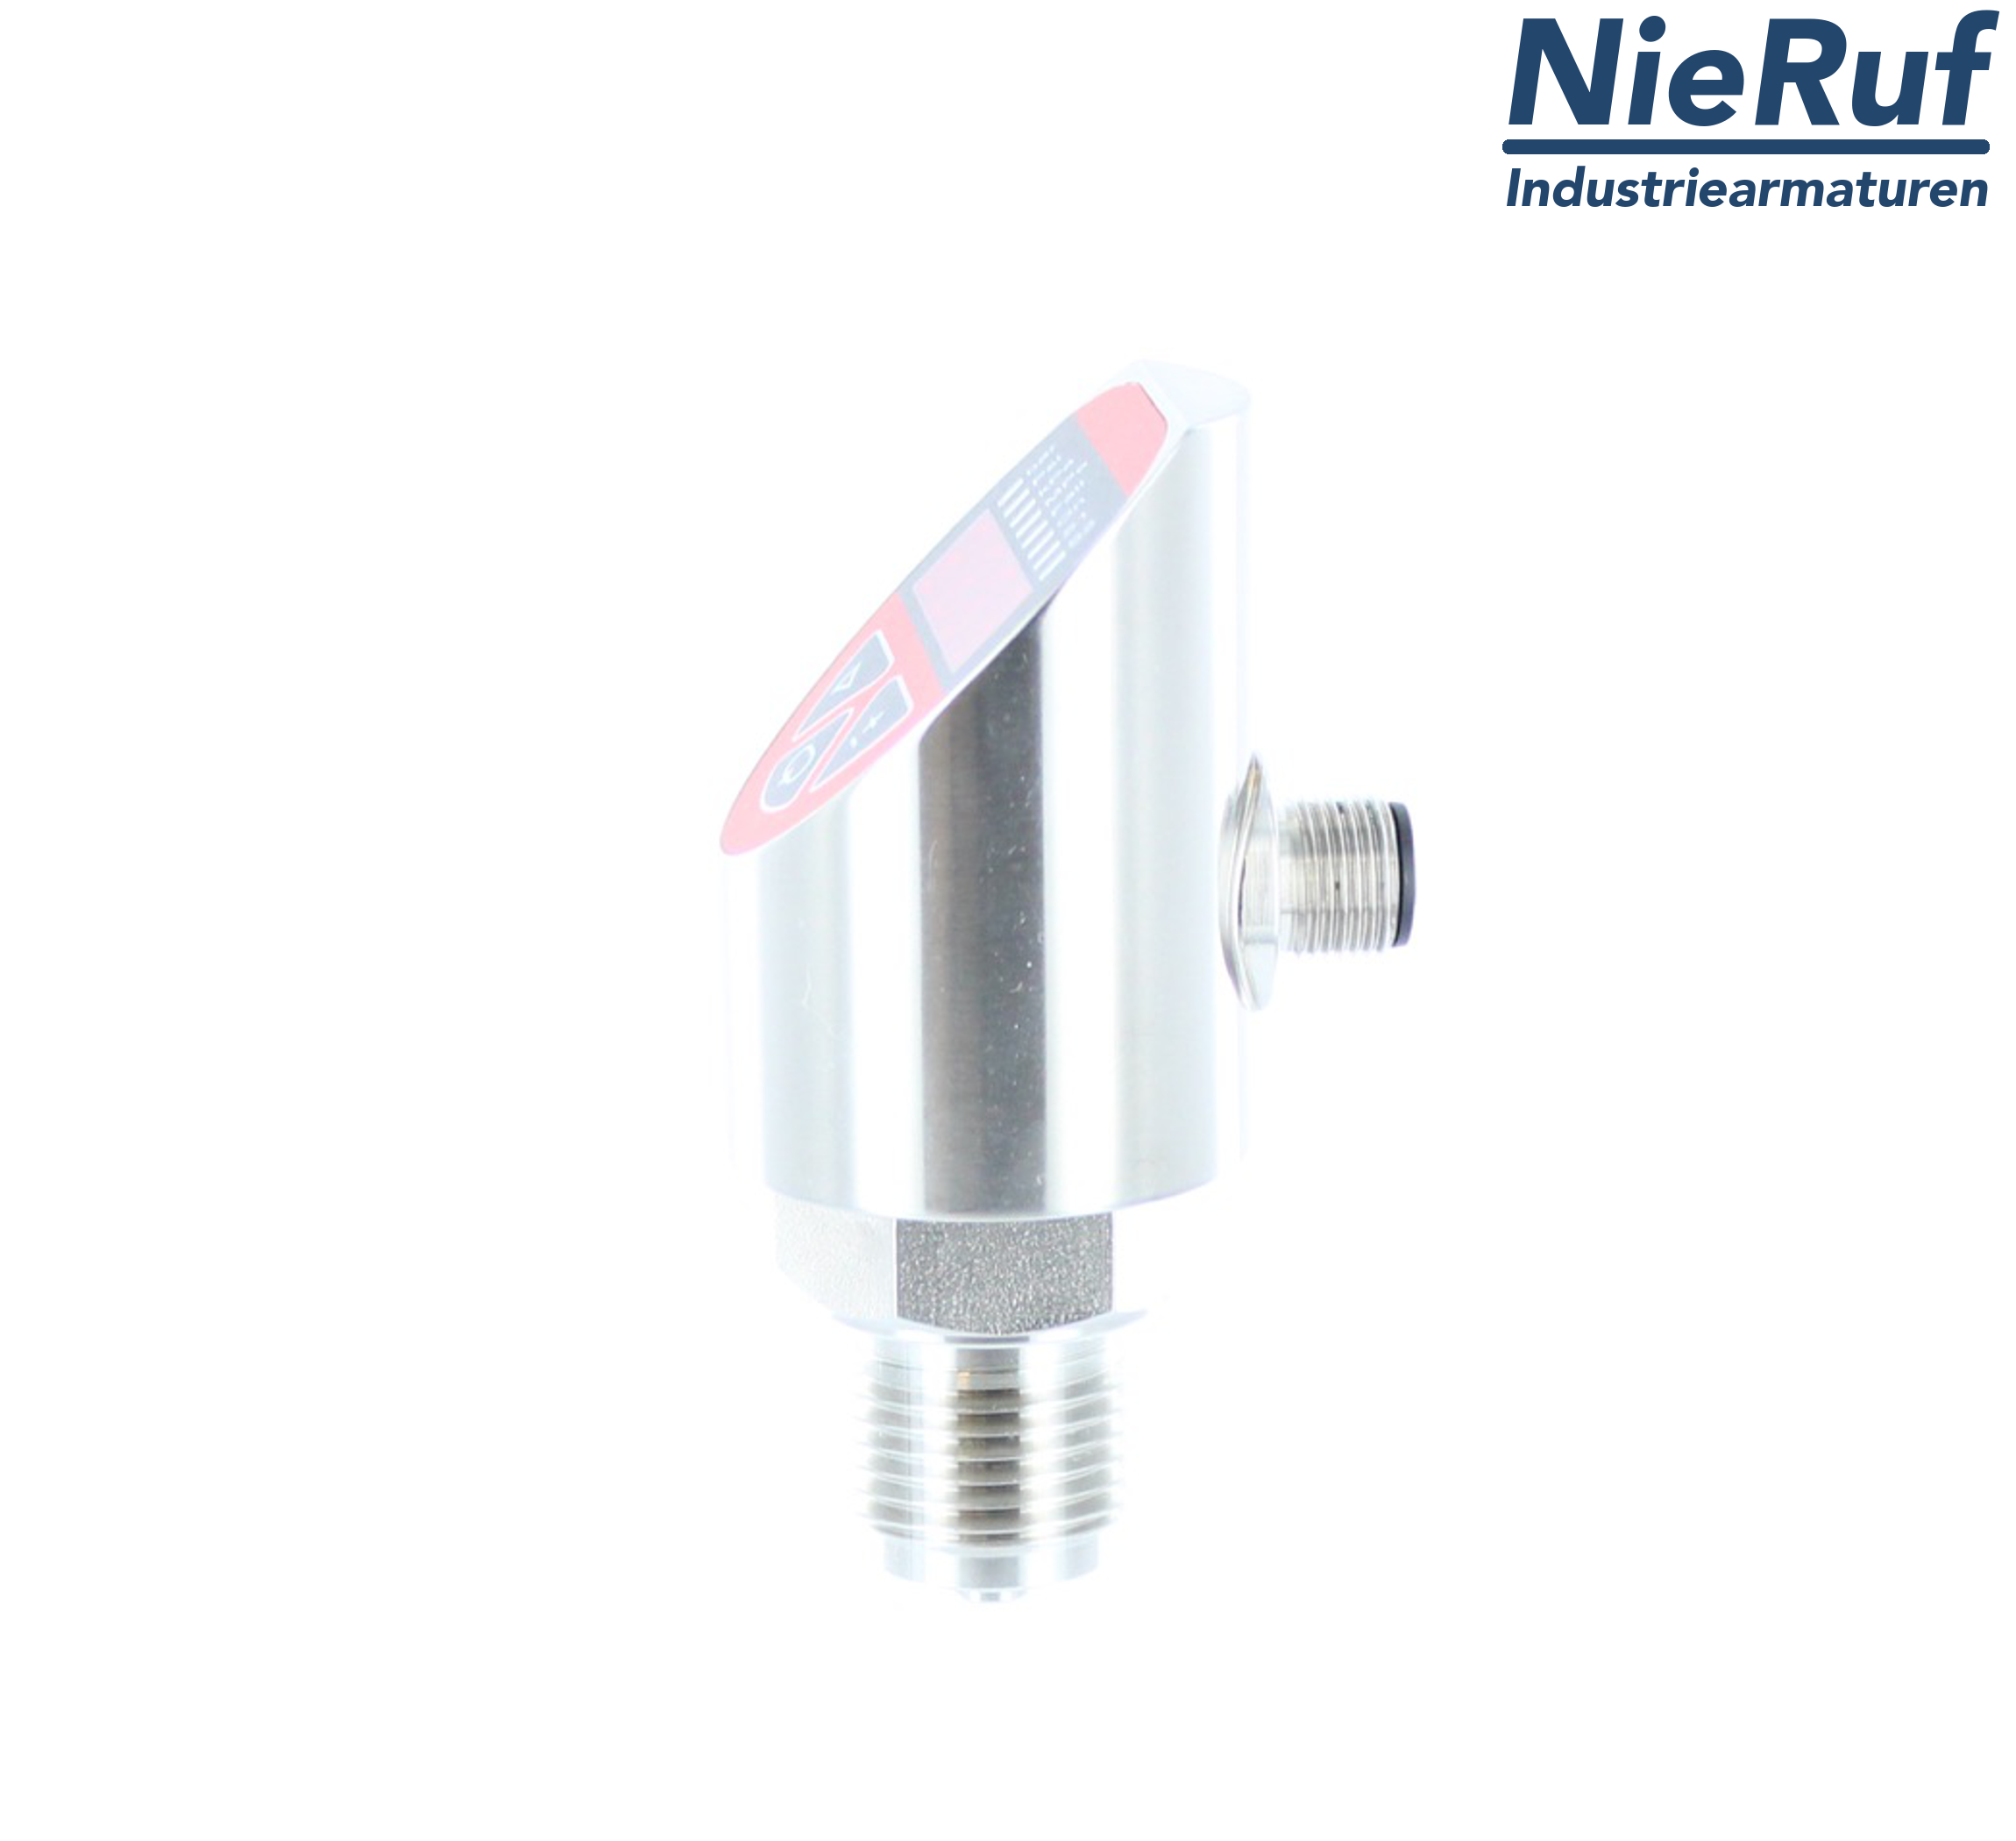 digital pressure sensor G 1/4" B 5-wire: 2xPNP, 1x4 - 20mA FPM 0,0 - 400,0 bar